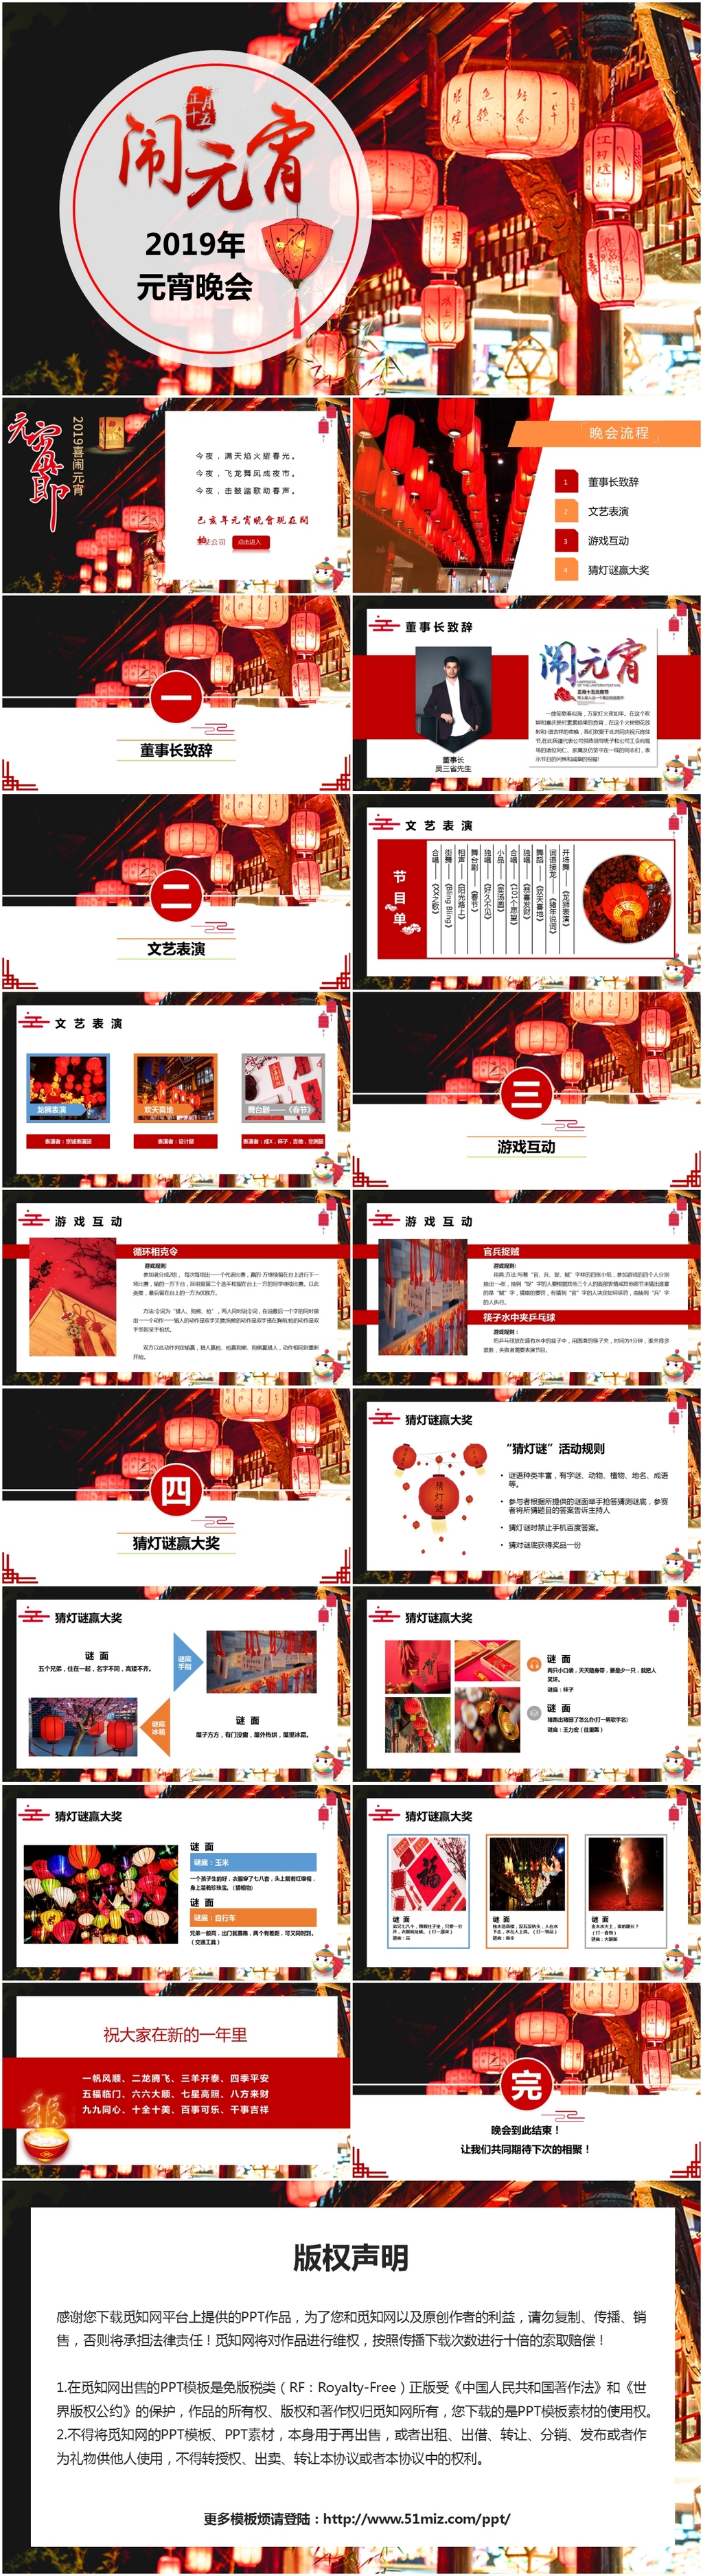 2019年中国传统节日元宵节企业元宵晚会主题PPT模板